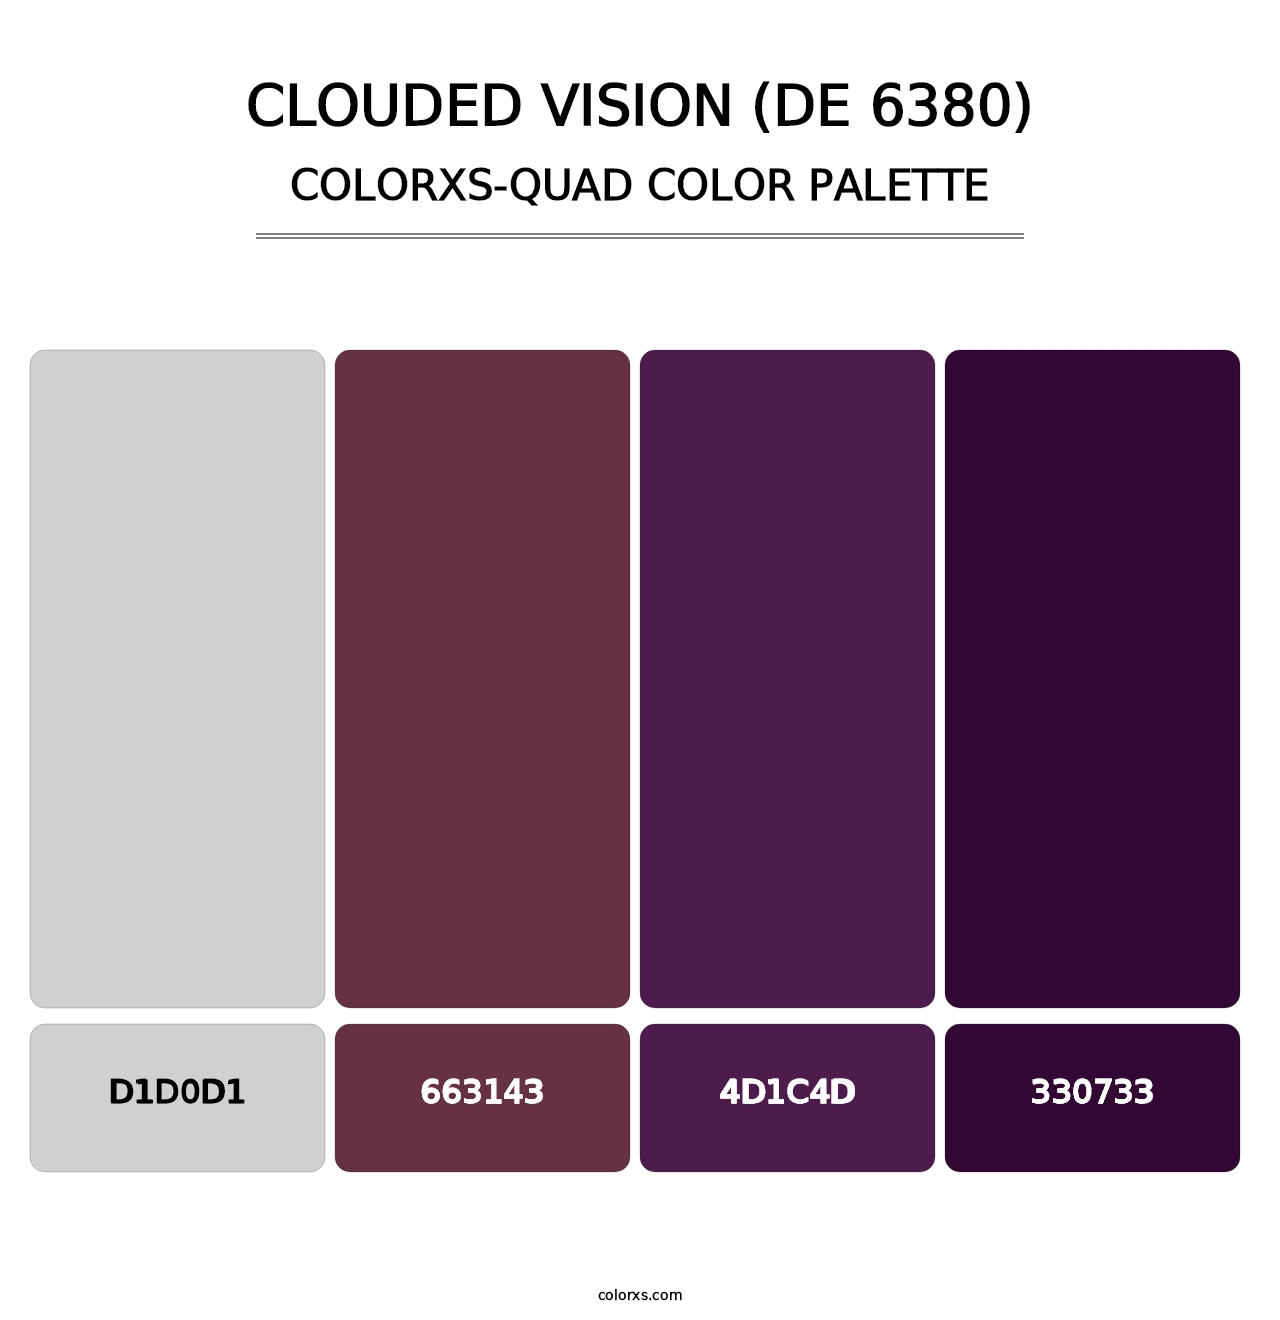 Clouded Vision (DE 6380) - Colorxs Quad Palette